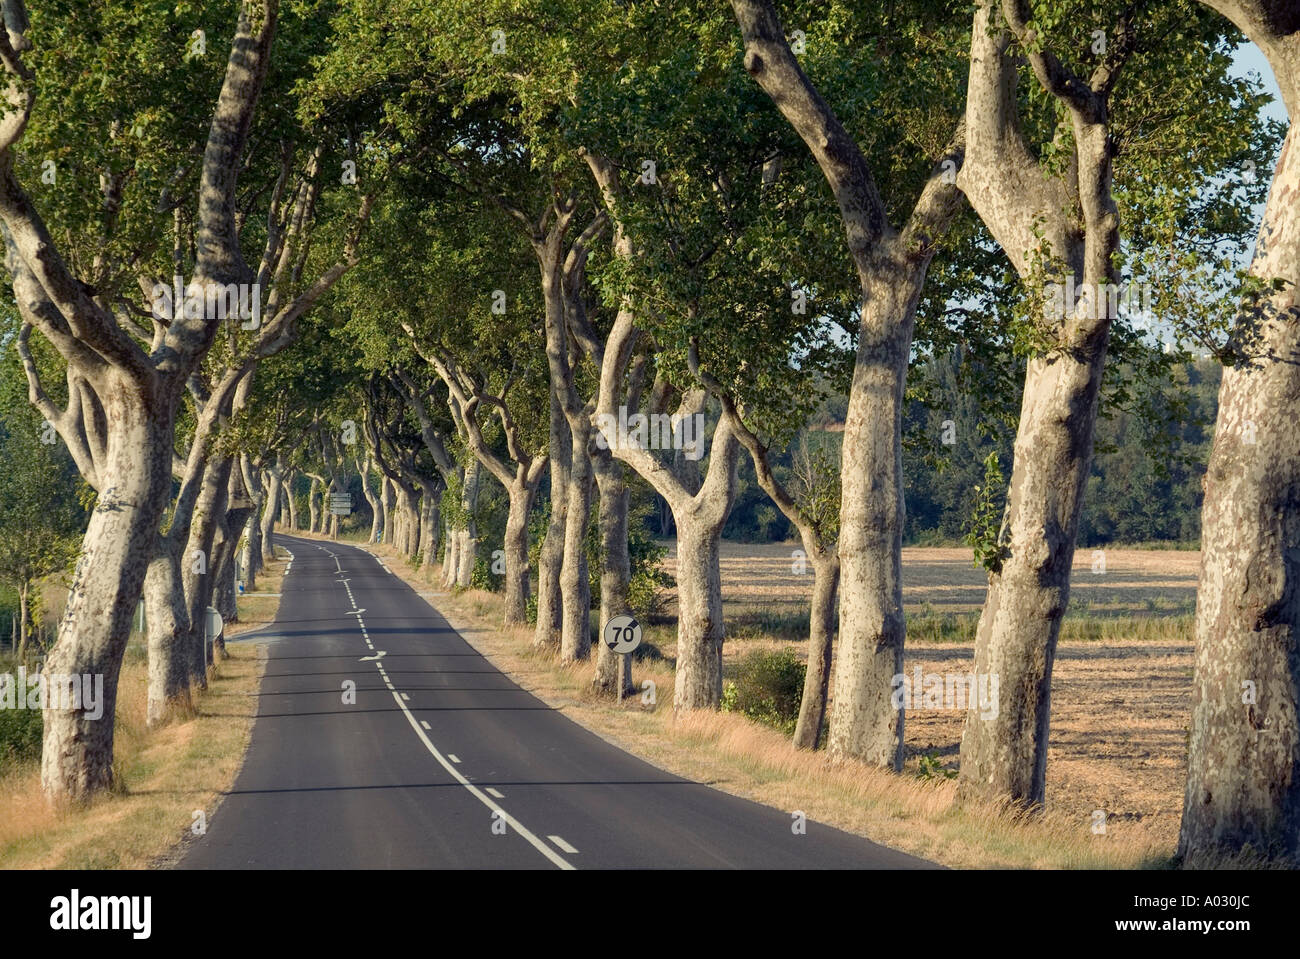 País por carretera bordeada de plátanos (Platanus), Francia. Foto de stock